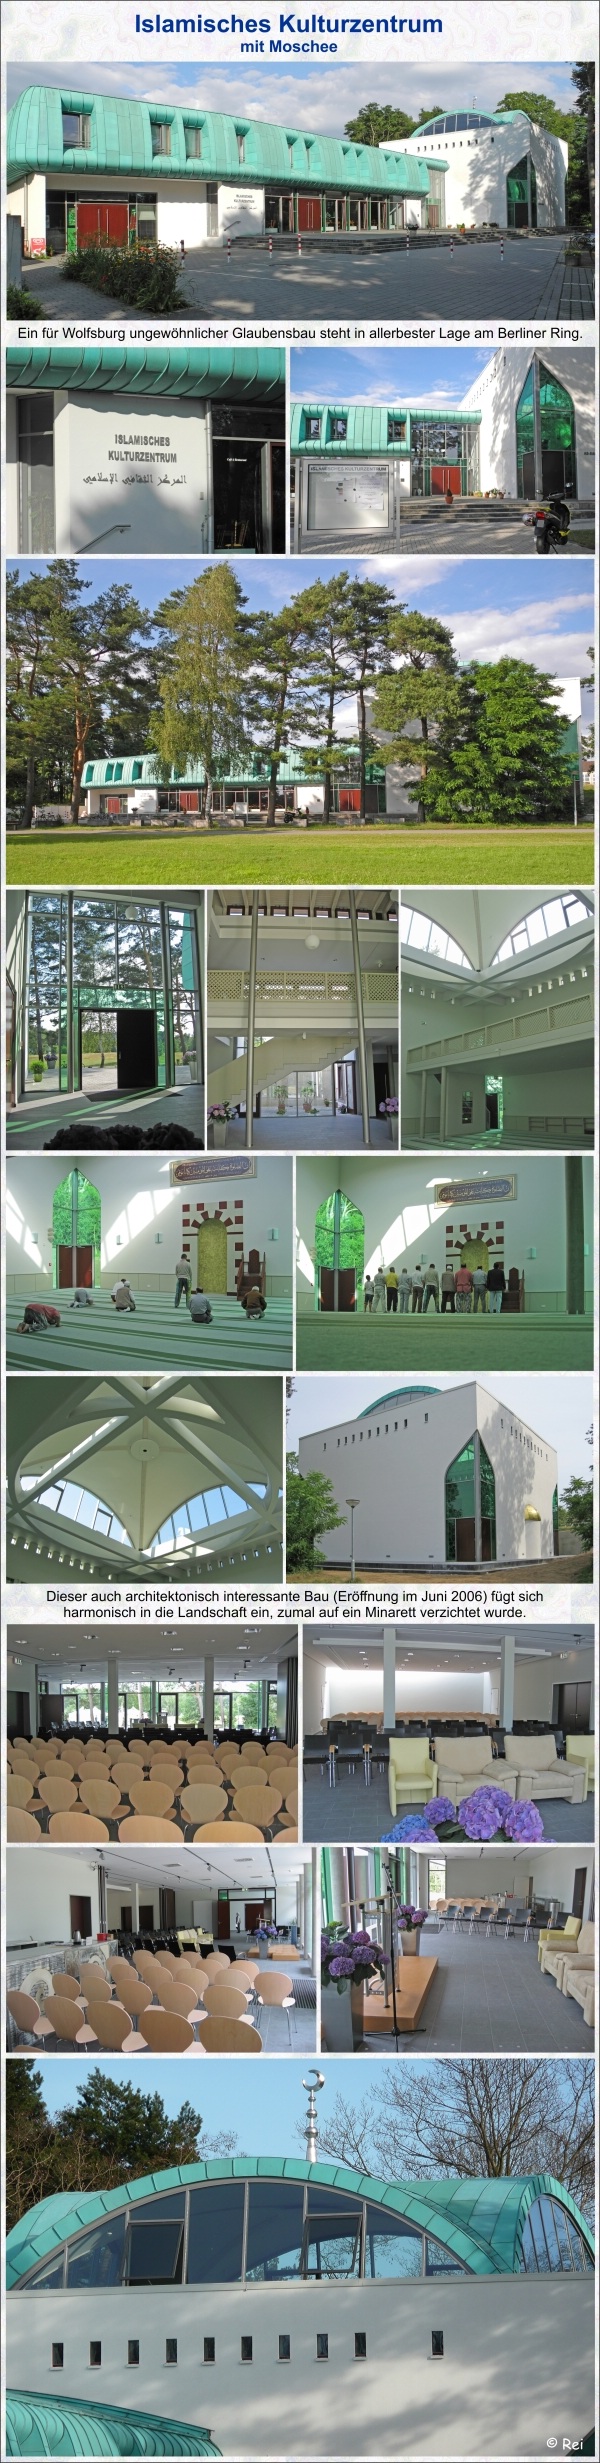 Islamisches Kulturzentrum